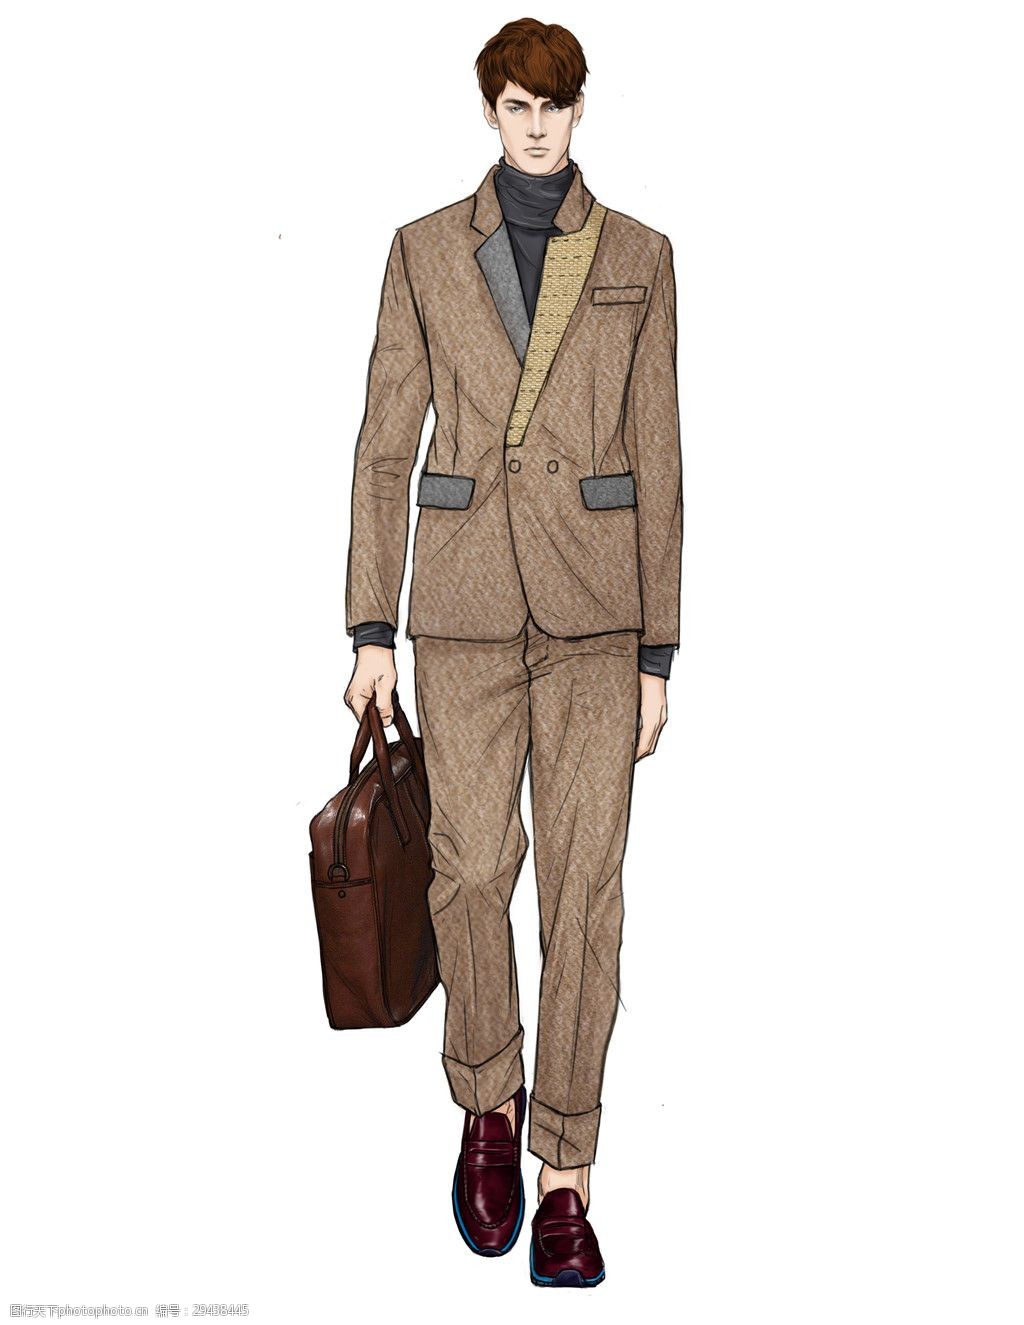 关键词:时尚浅褐色西装外套男装效果图 服装设计 男装 男装效果图